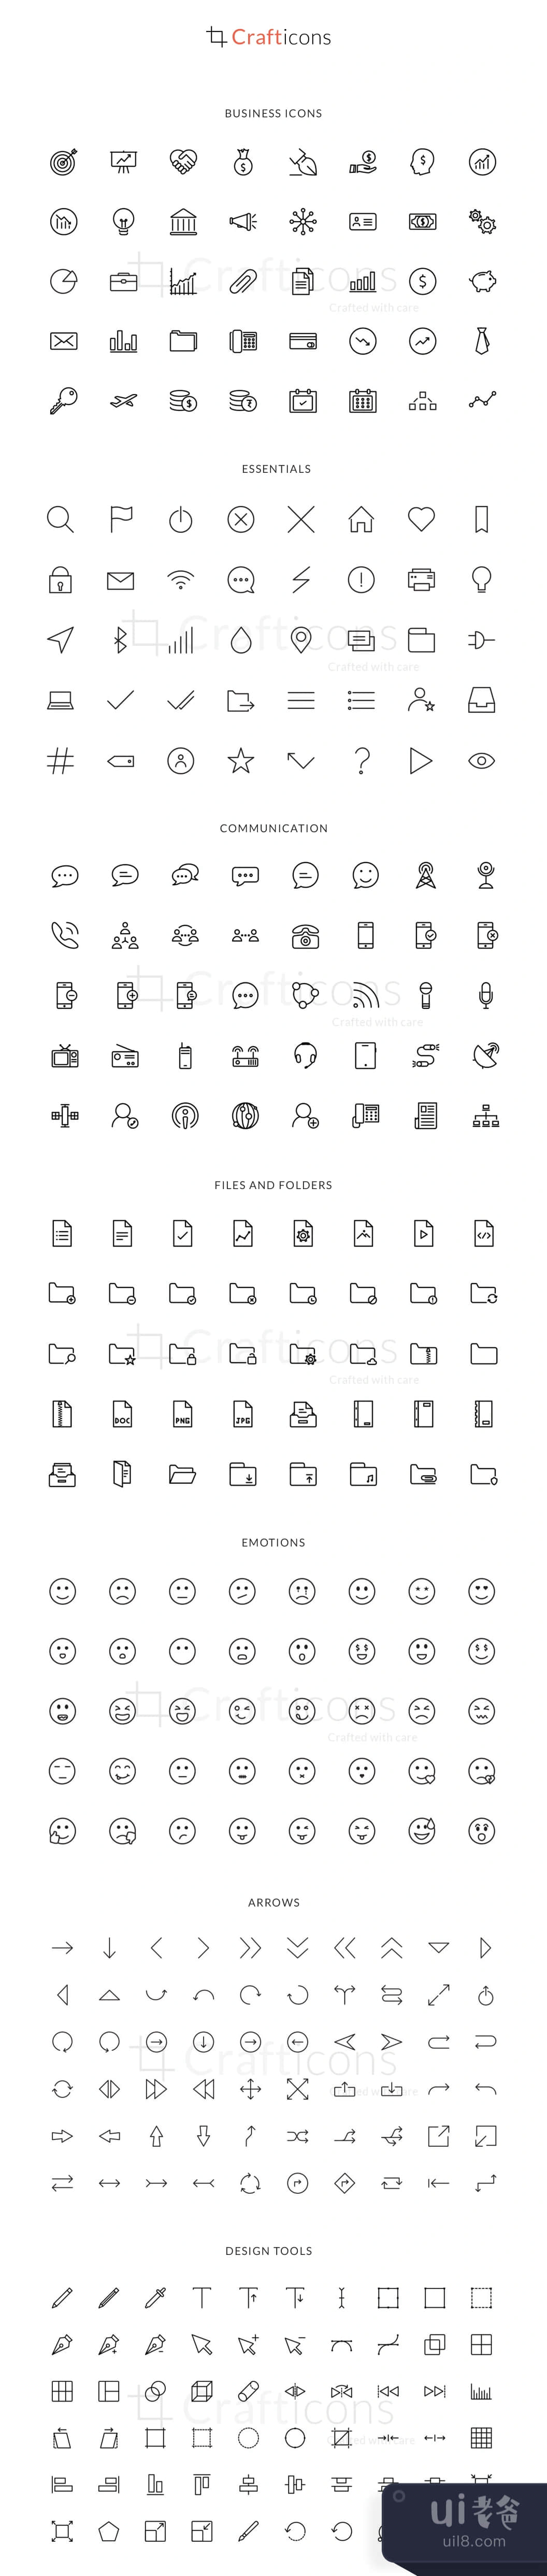 工艺线图标 (Craft Line Icons)插图